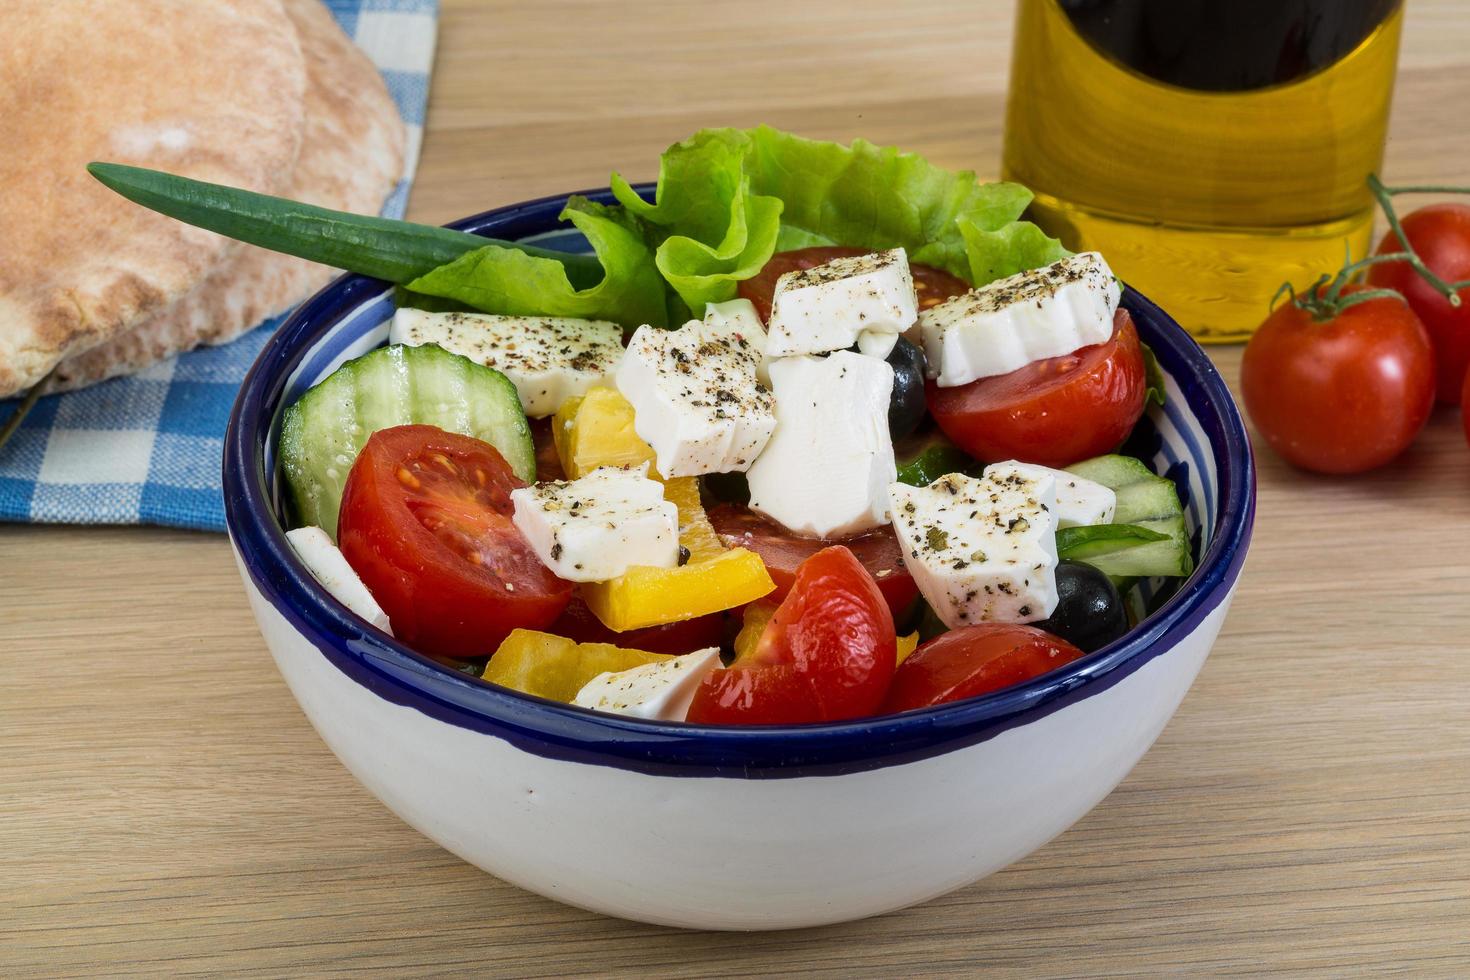 griechischer salat in einer schüssel auf holzhintergrund foto